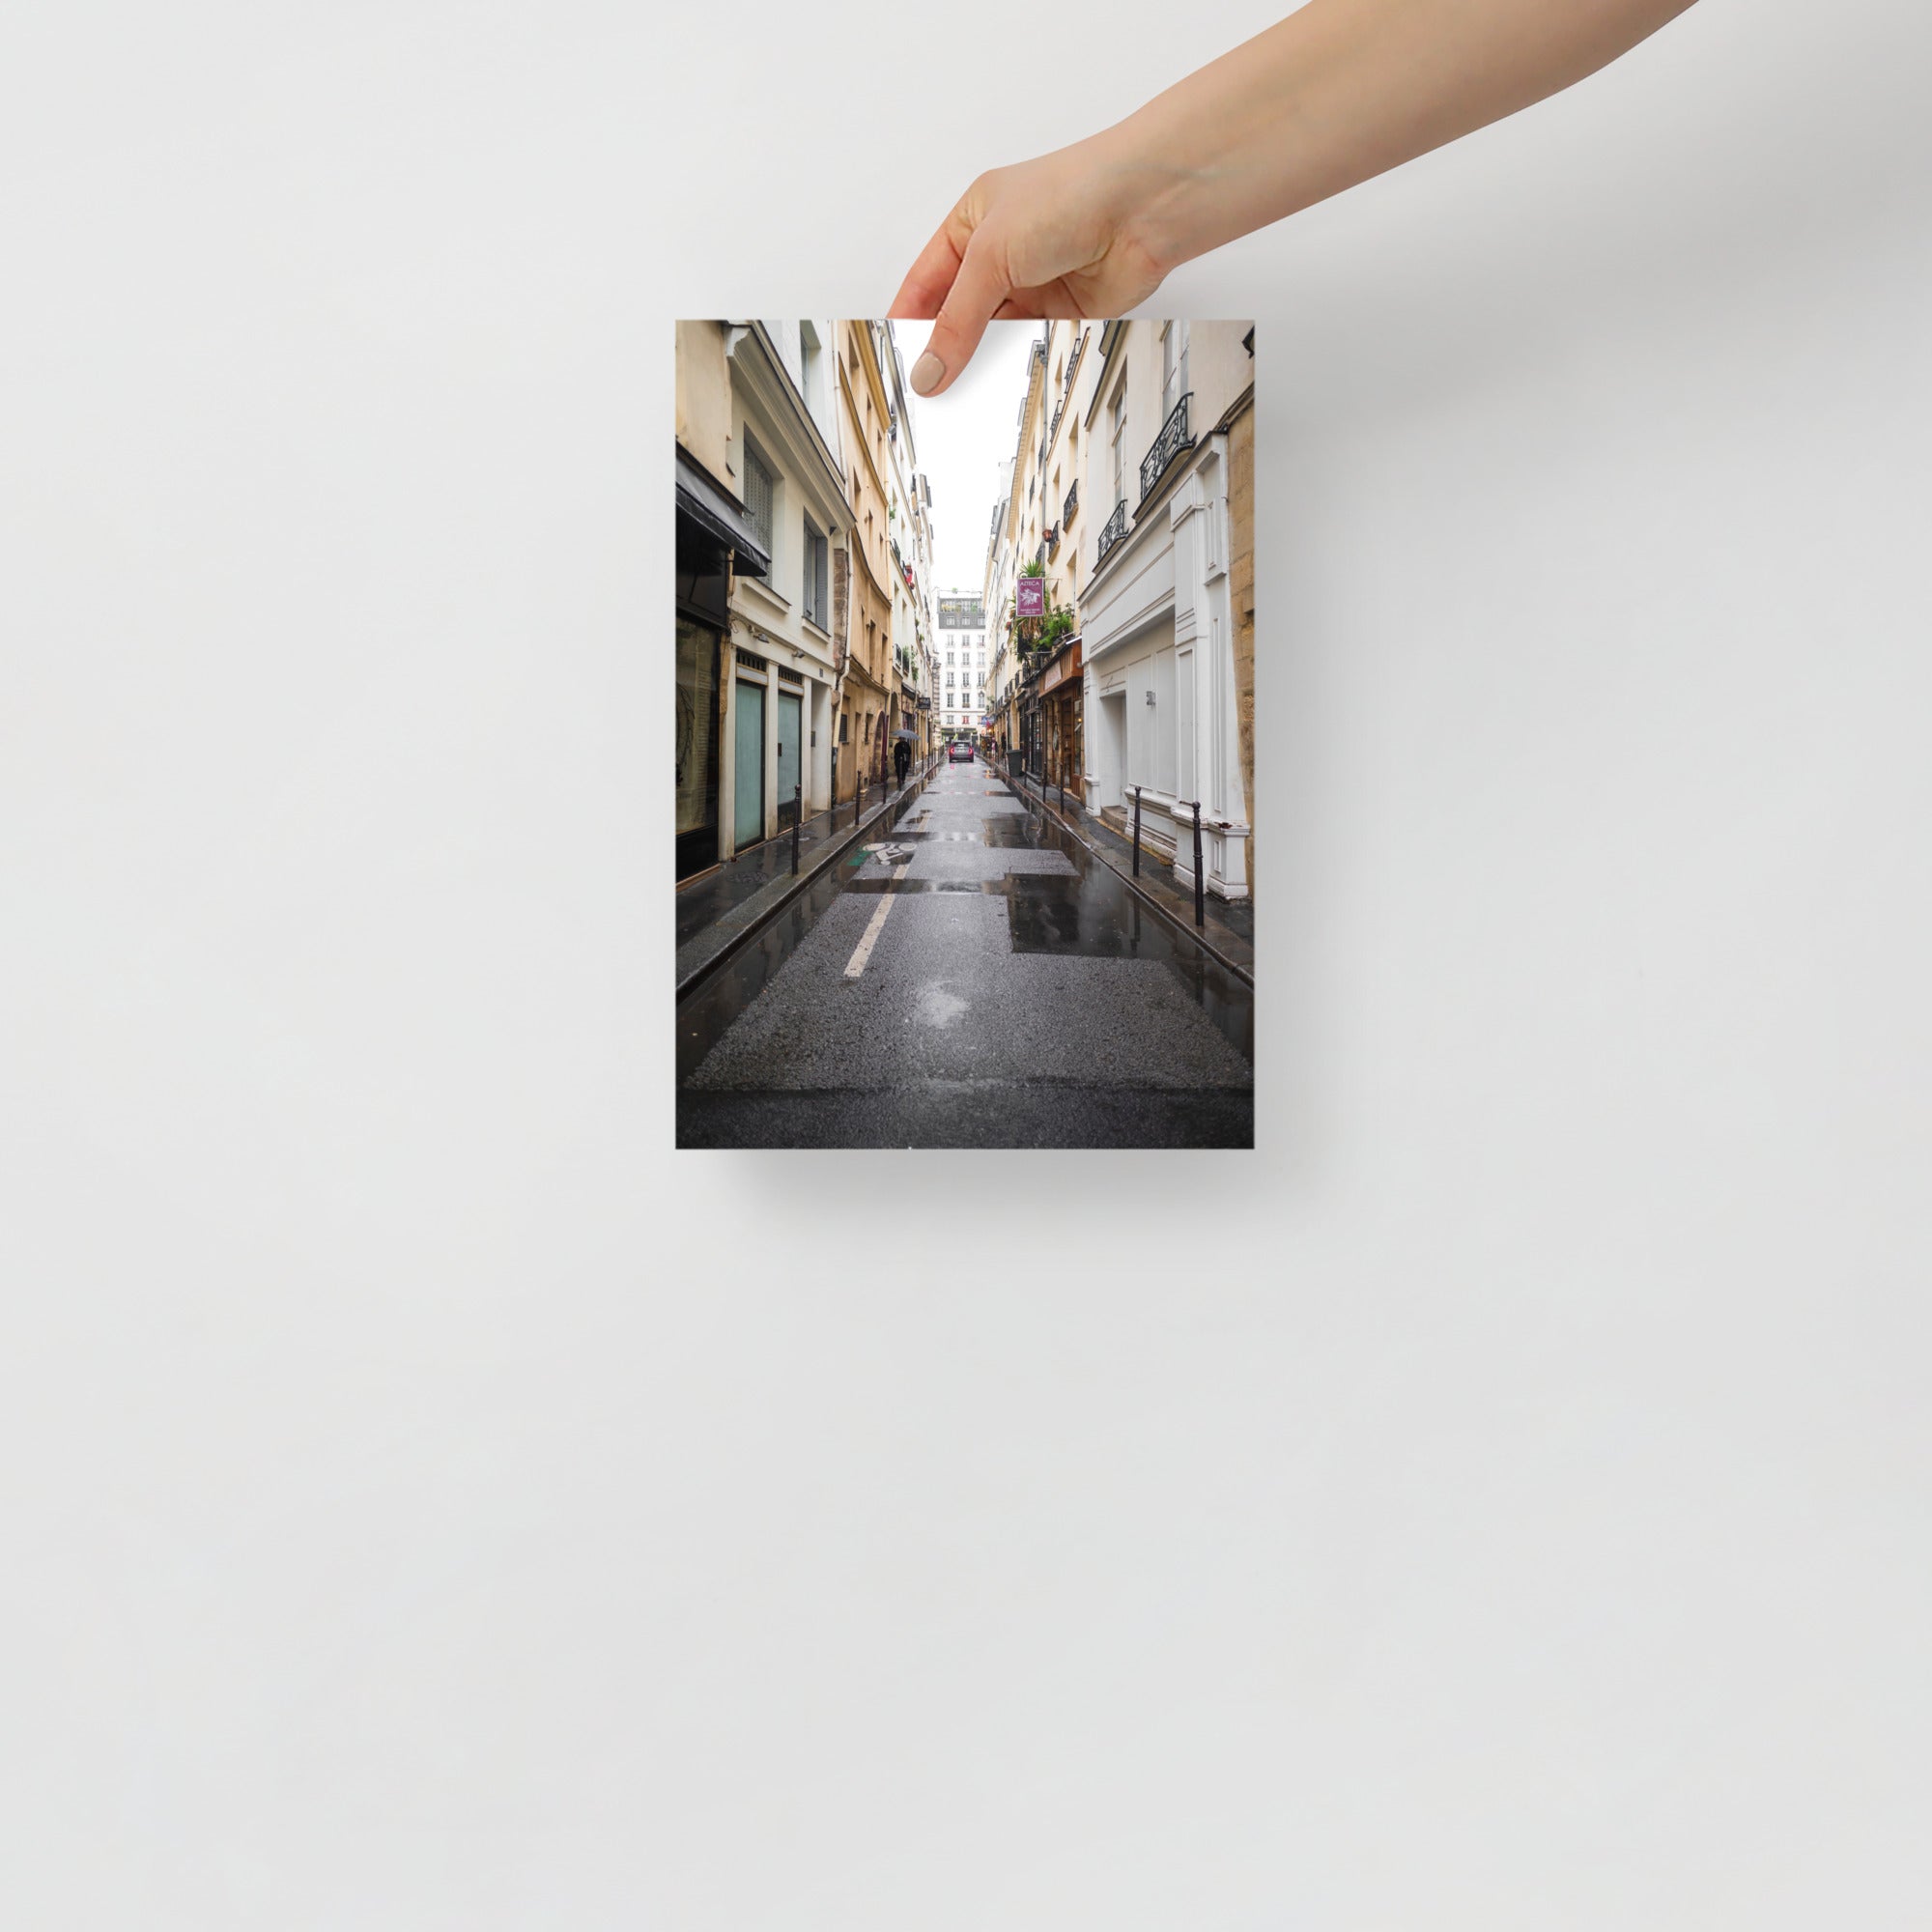 Poster mural - Rue Sauval – Photographie de rue – Poster photo, poster XXL, photographie murale et des posters muraux unique au monde. La boutique de posters créée par Yann Peccard un Photographe français.